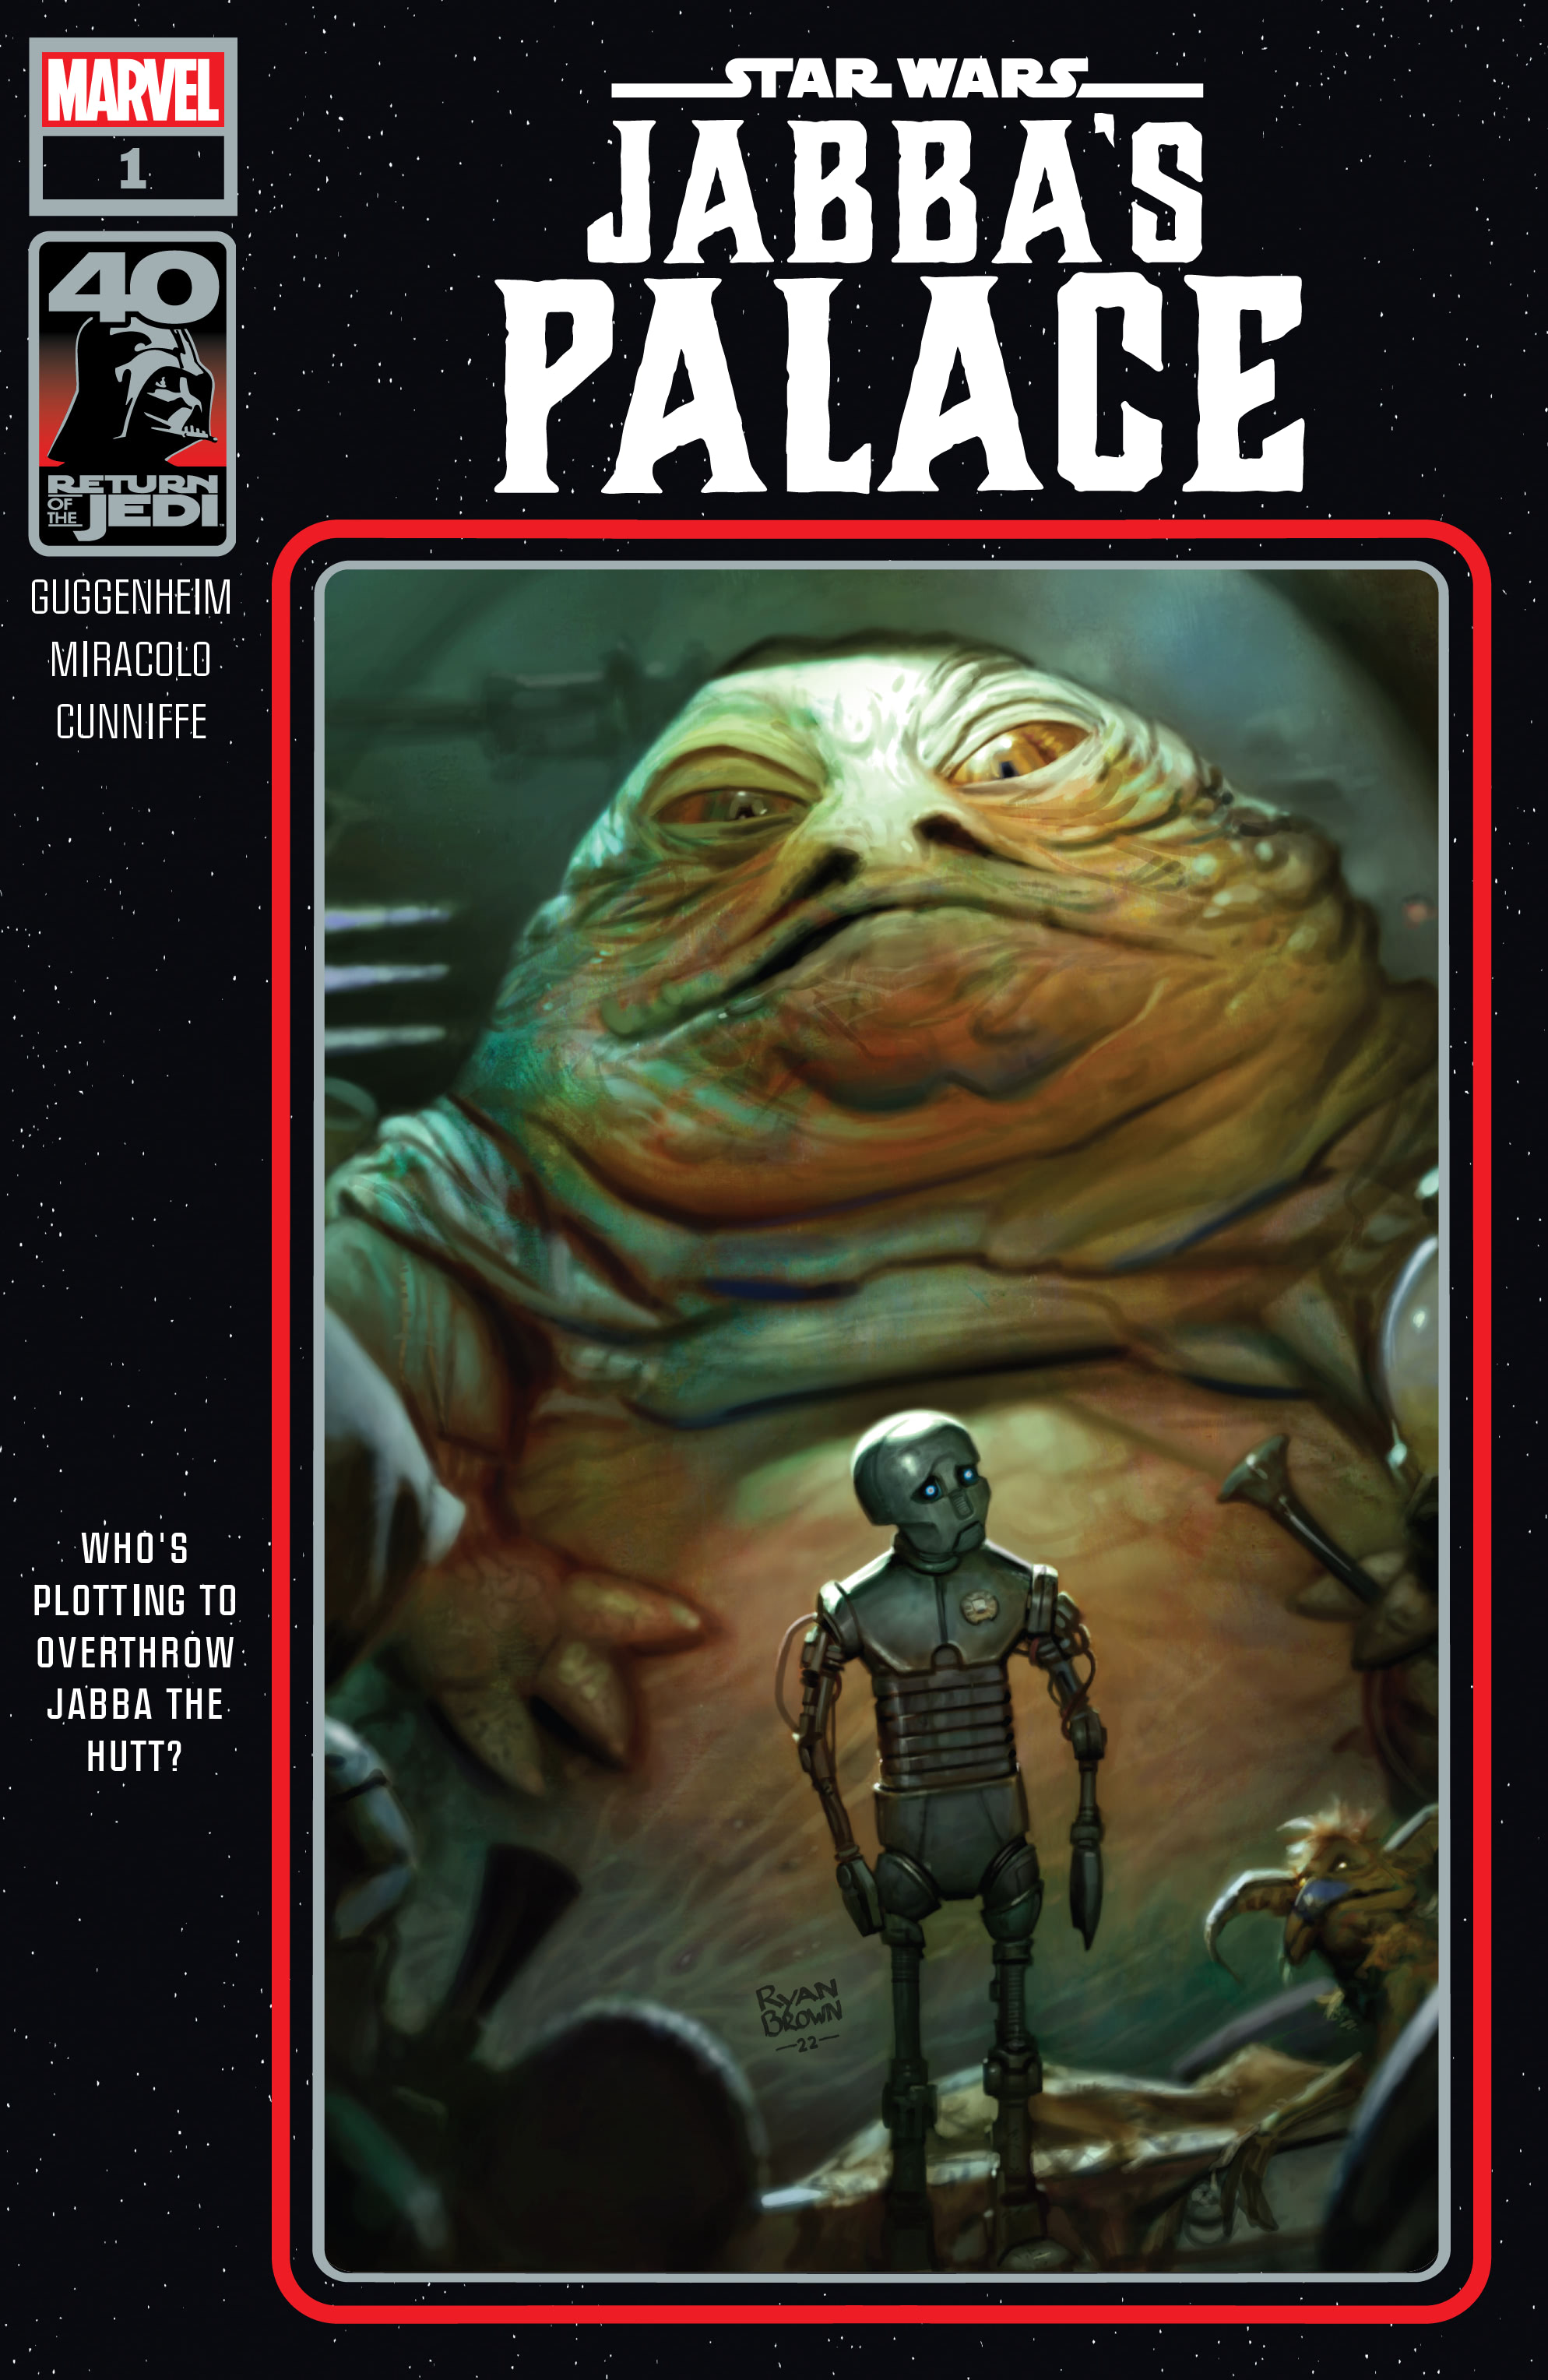 Return of the Jedi – Jabba's Palace 1 | Wookieepedia | Fandom